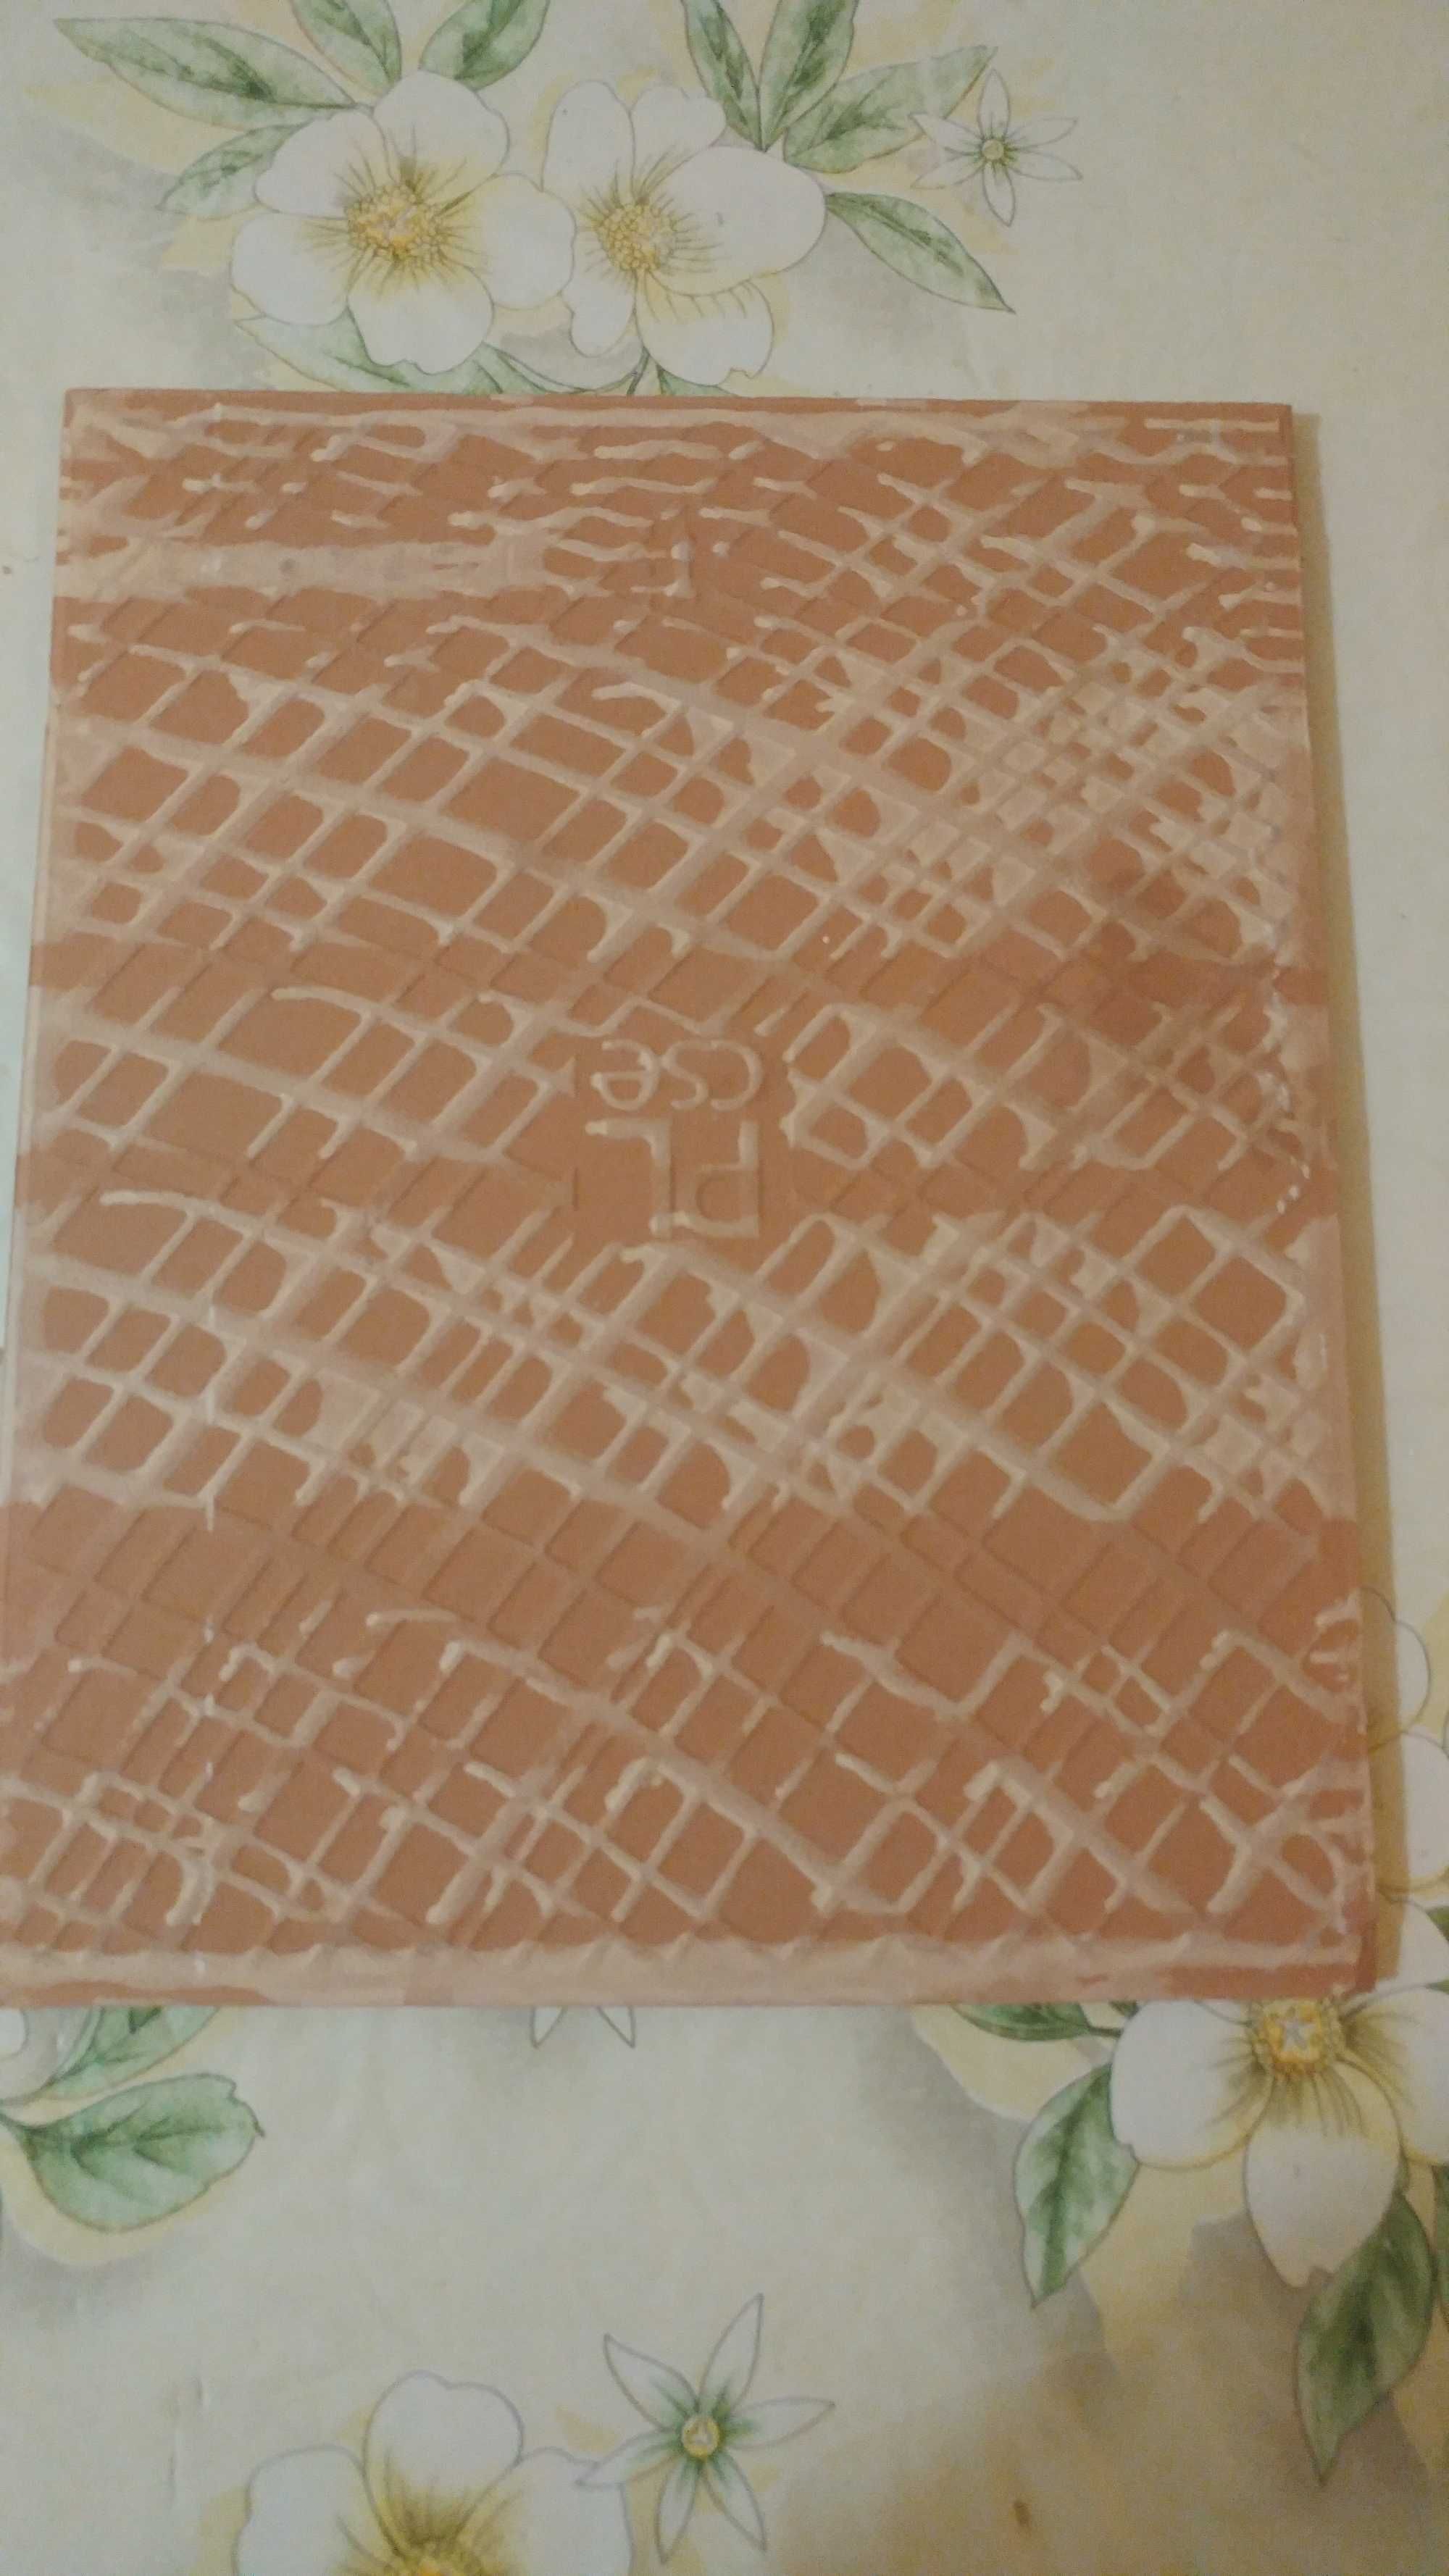 Płytki ścienne, glazura Tania szara Cersanit 25 x 20 cm.